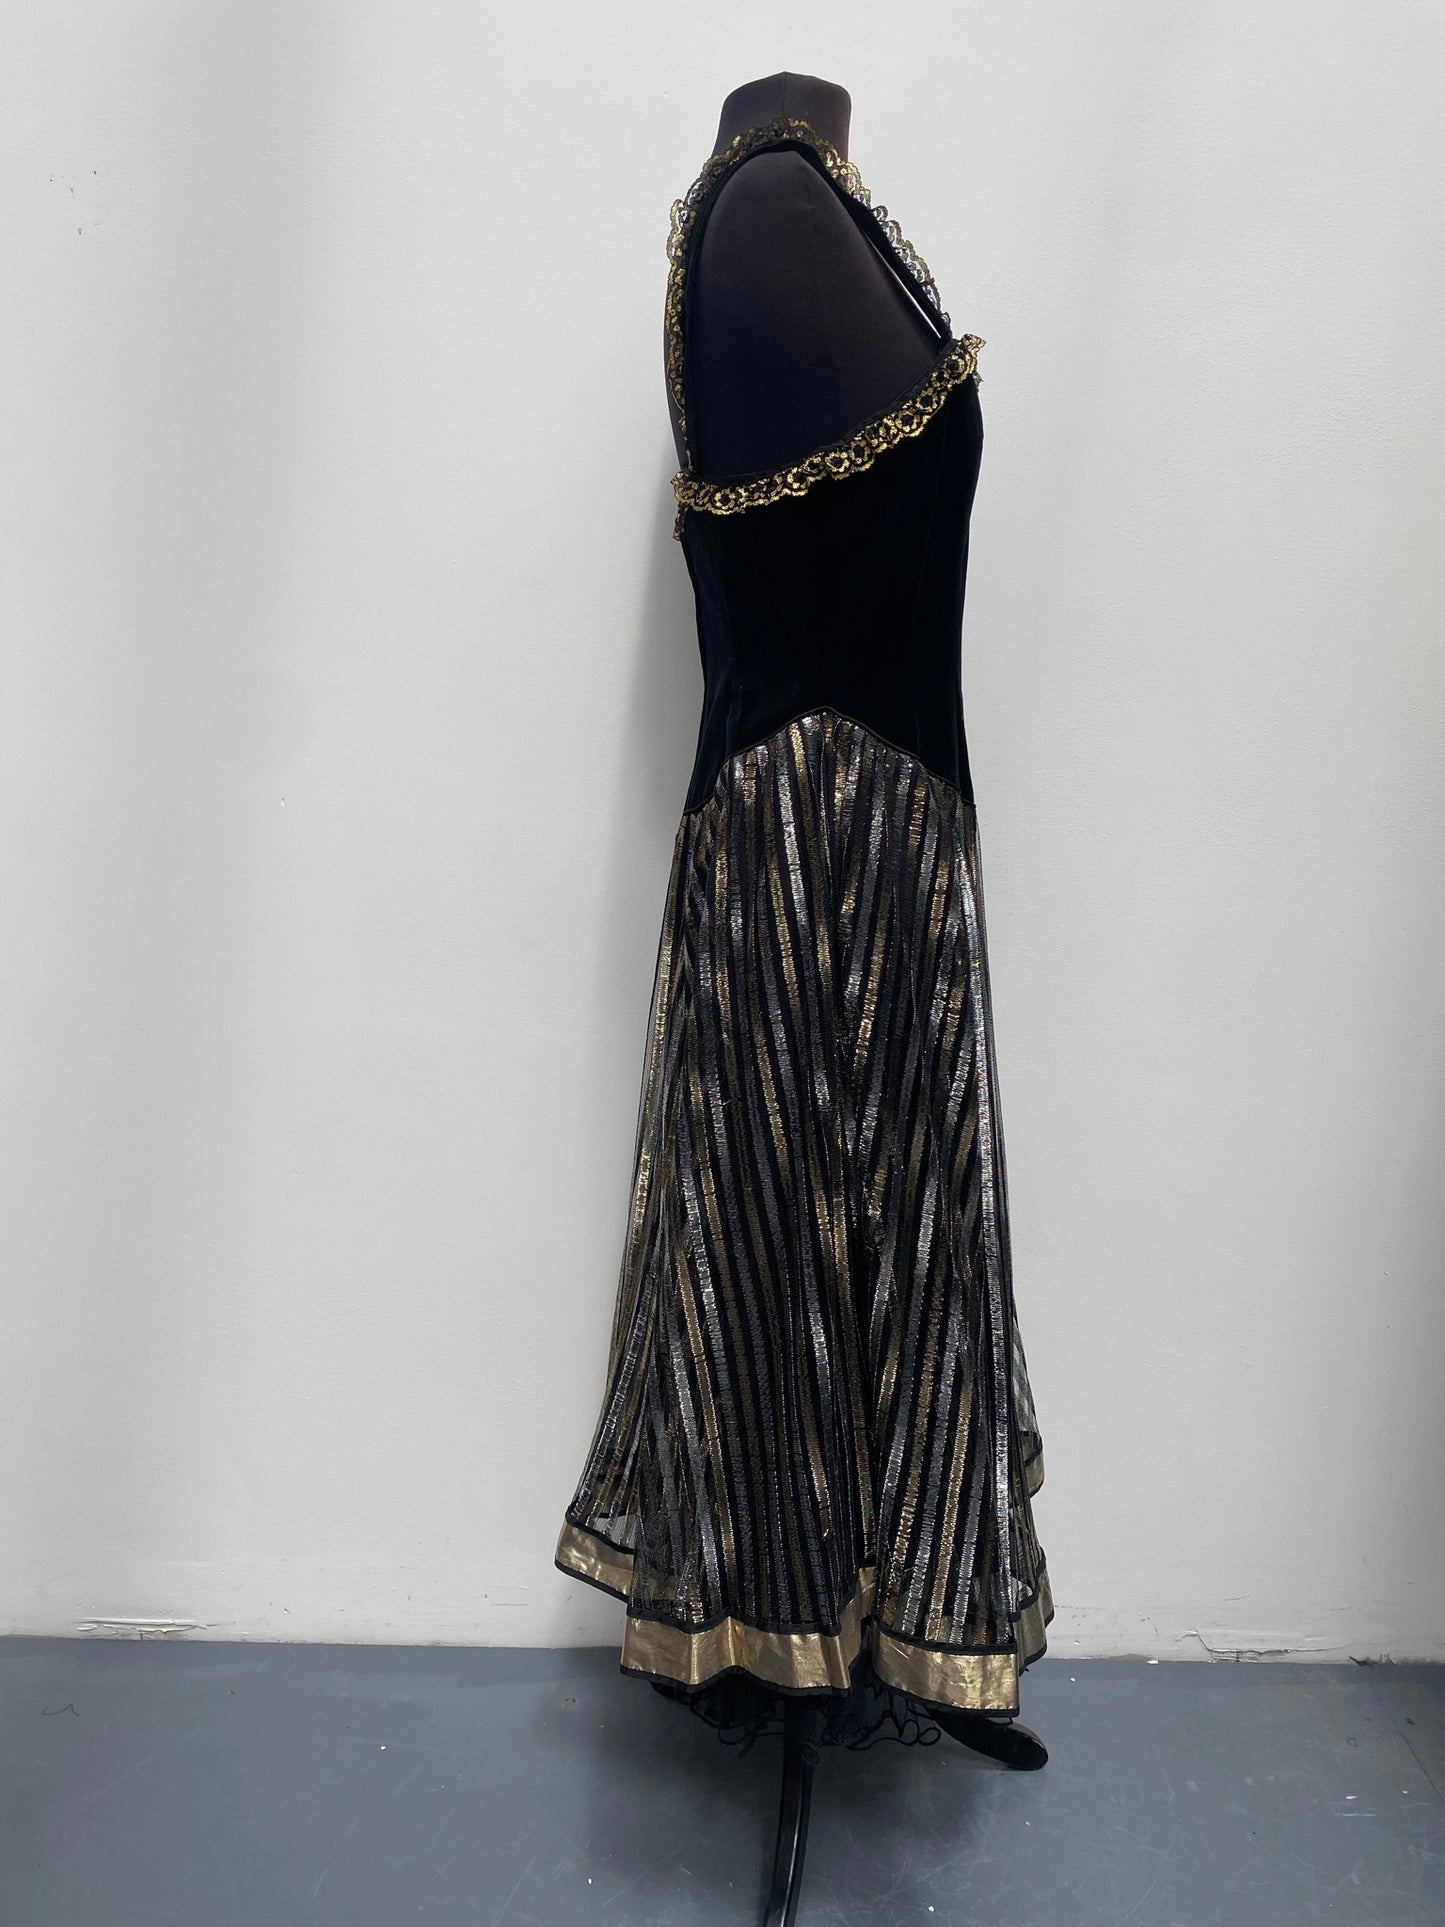 Black Gold Vintage David Butler Dress Size 10 - Showgirl/Saloon Girl Outfit